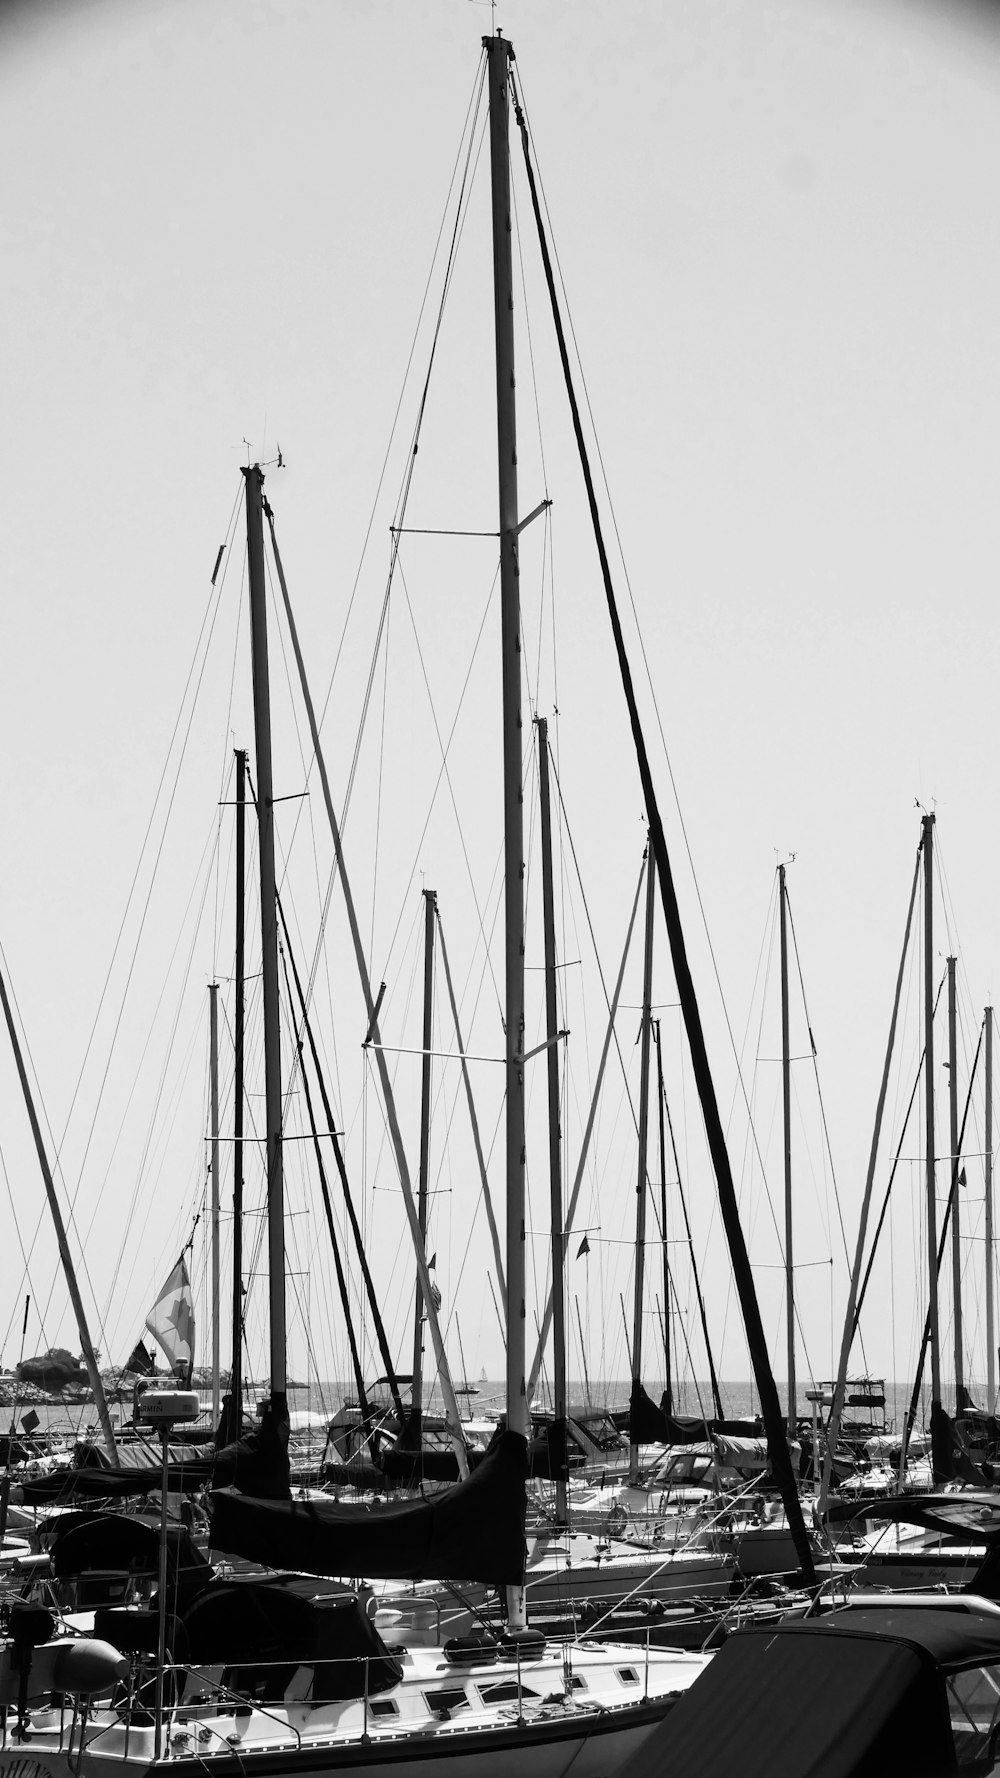 Yates en el puerto en foto en escala de grises